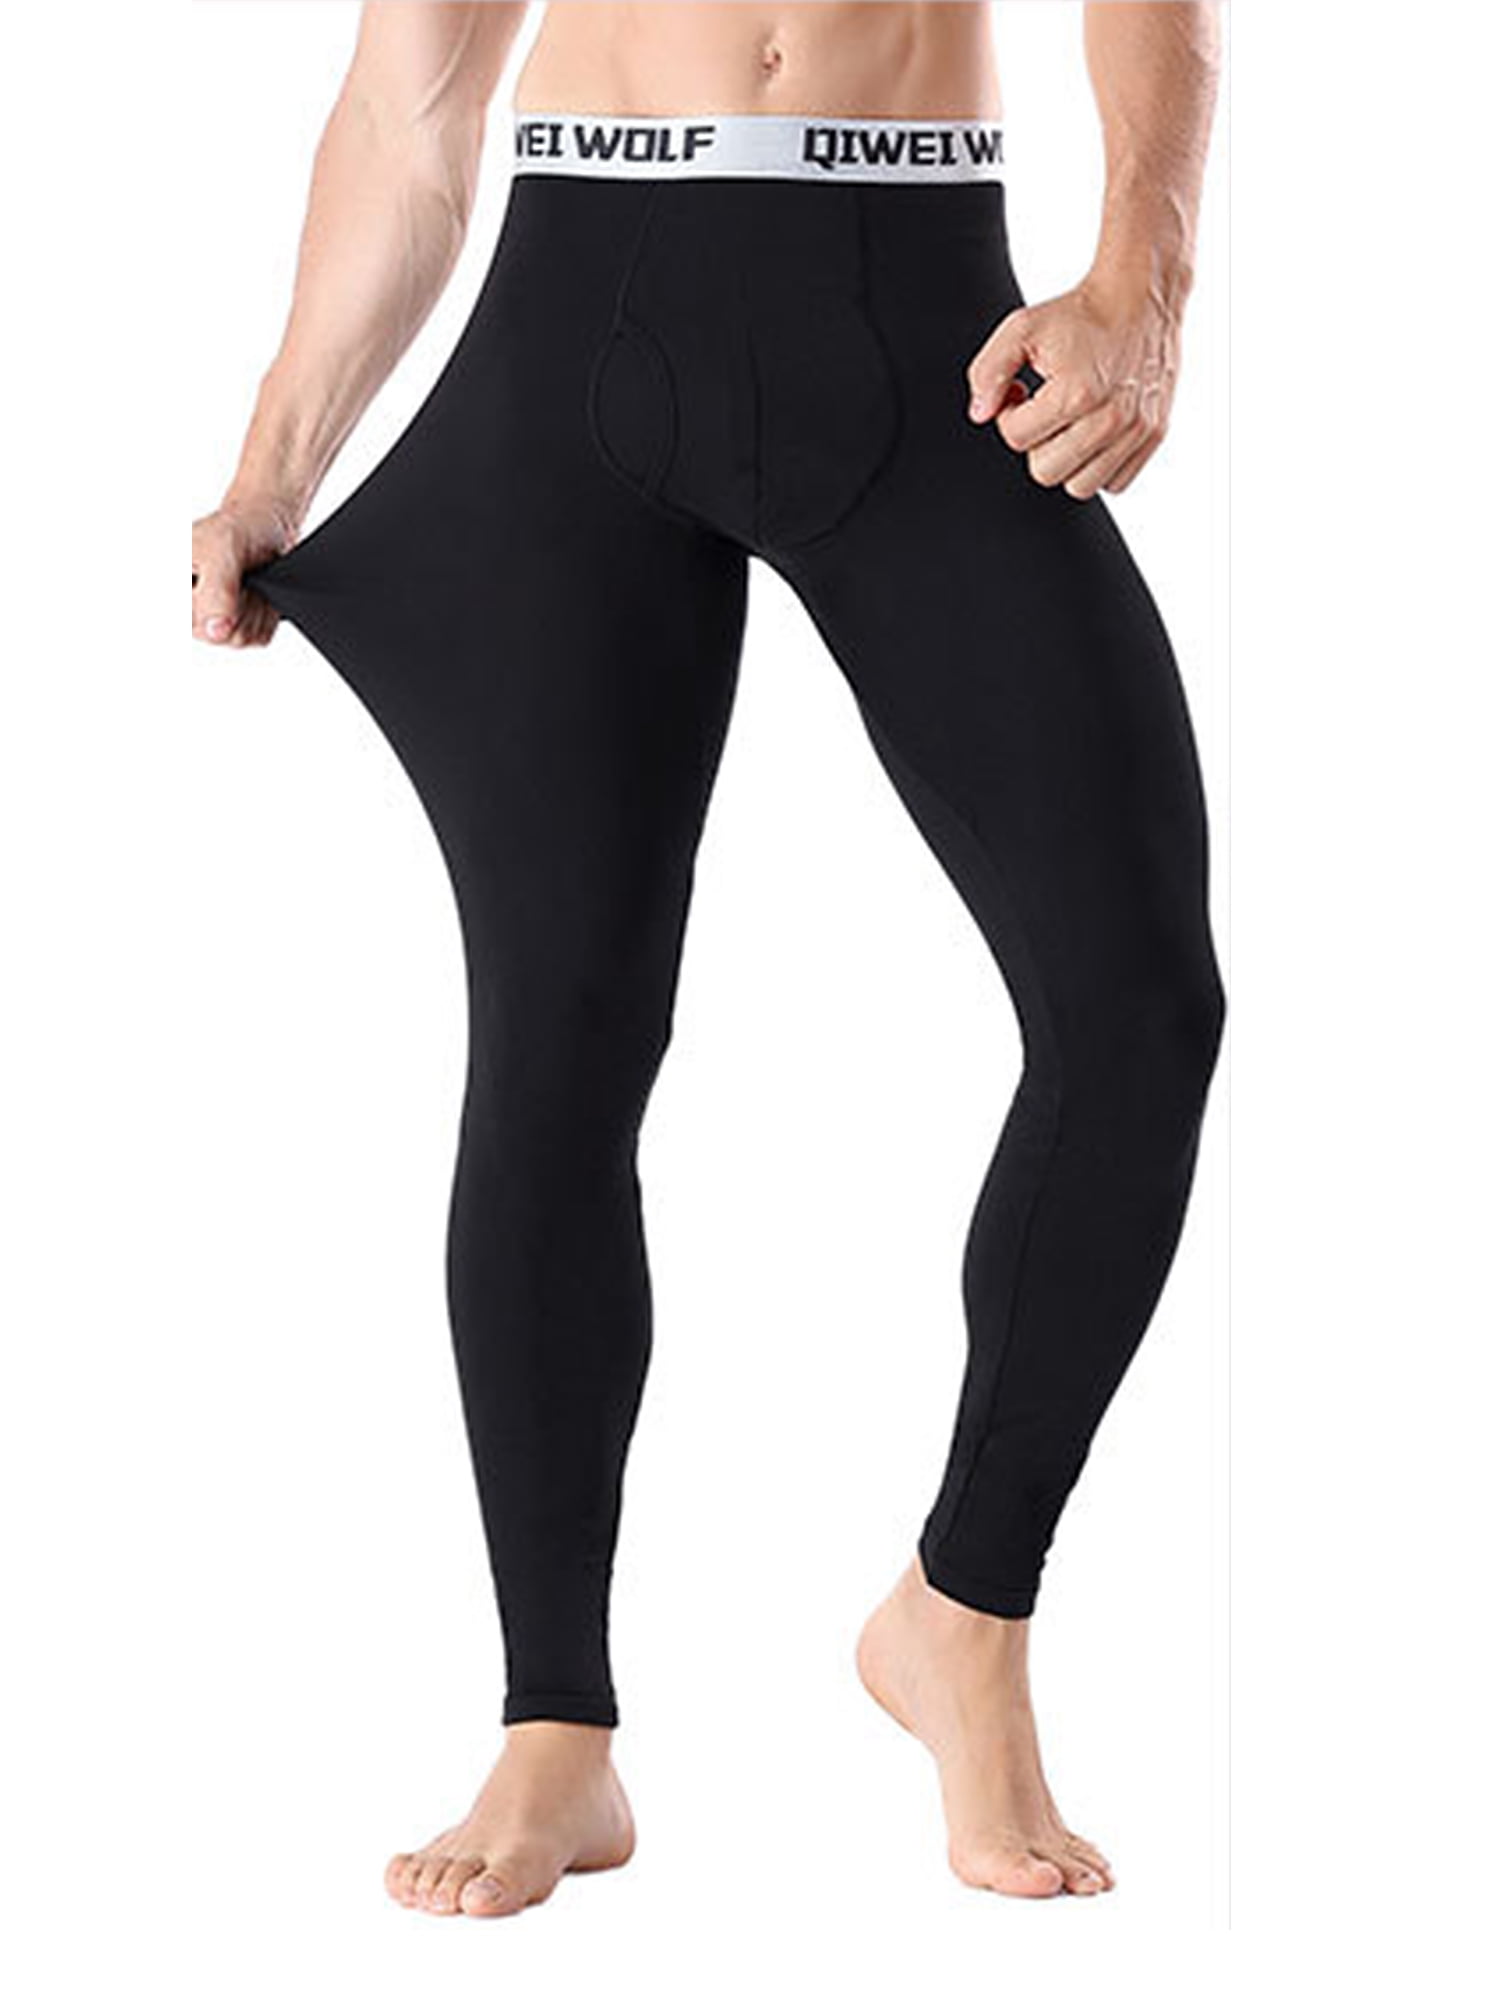 Mens Modal Elastic Tight Fit Super-Thin Thermal Base Layer Warm Long Johns Pants